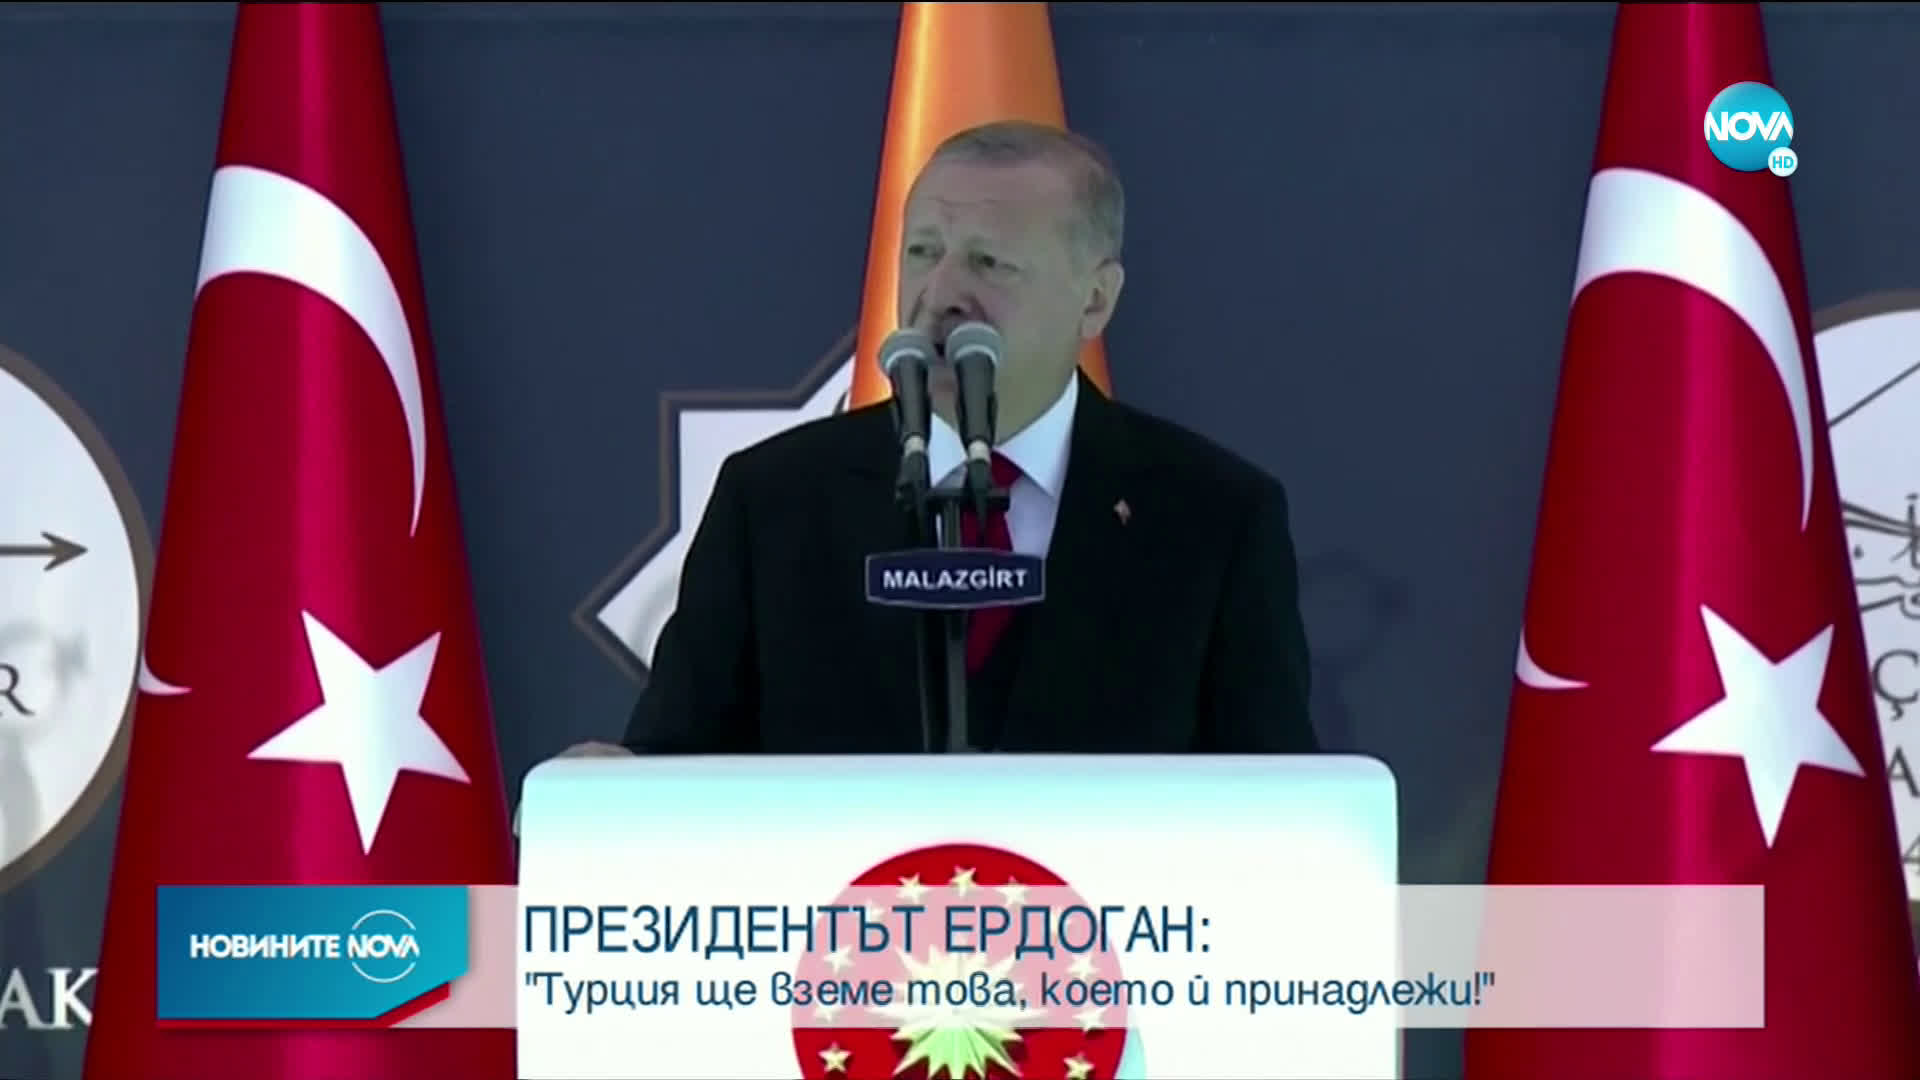 Ердоган се закани: Турция ще вземе това, което ѝ принадлежи в Средиземно, Егейско и Черно море